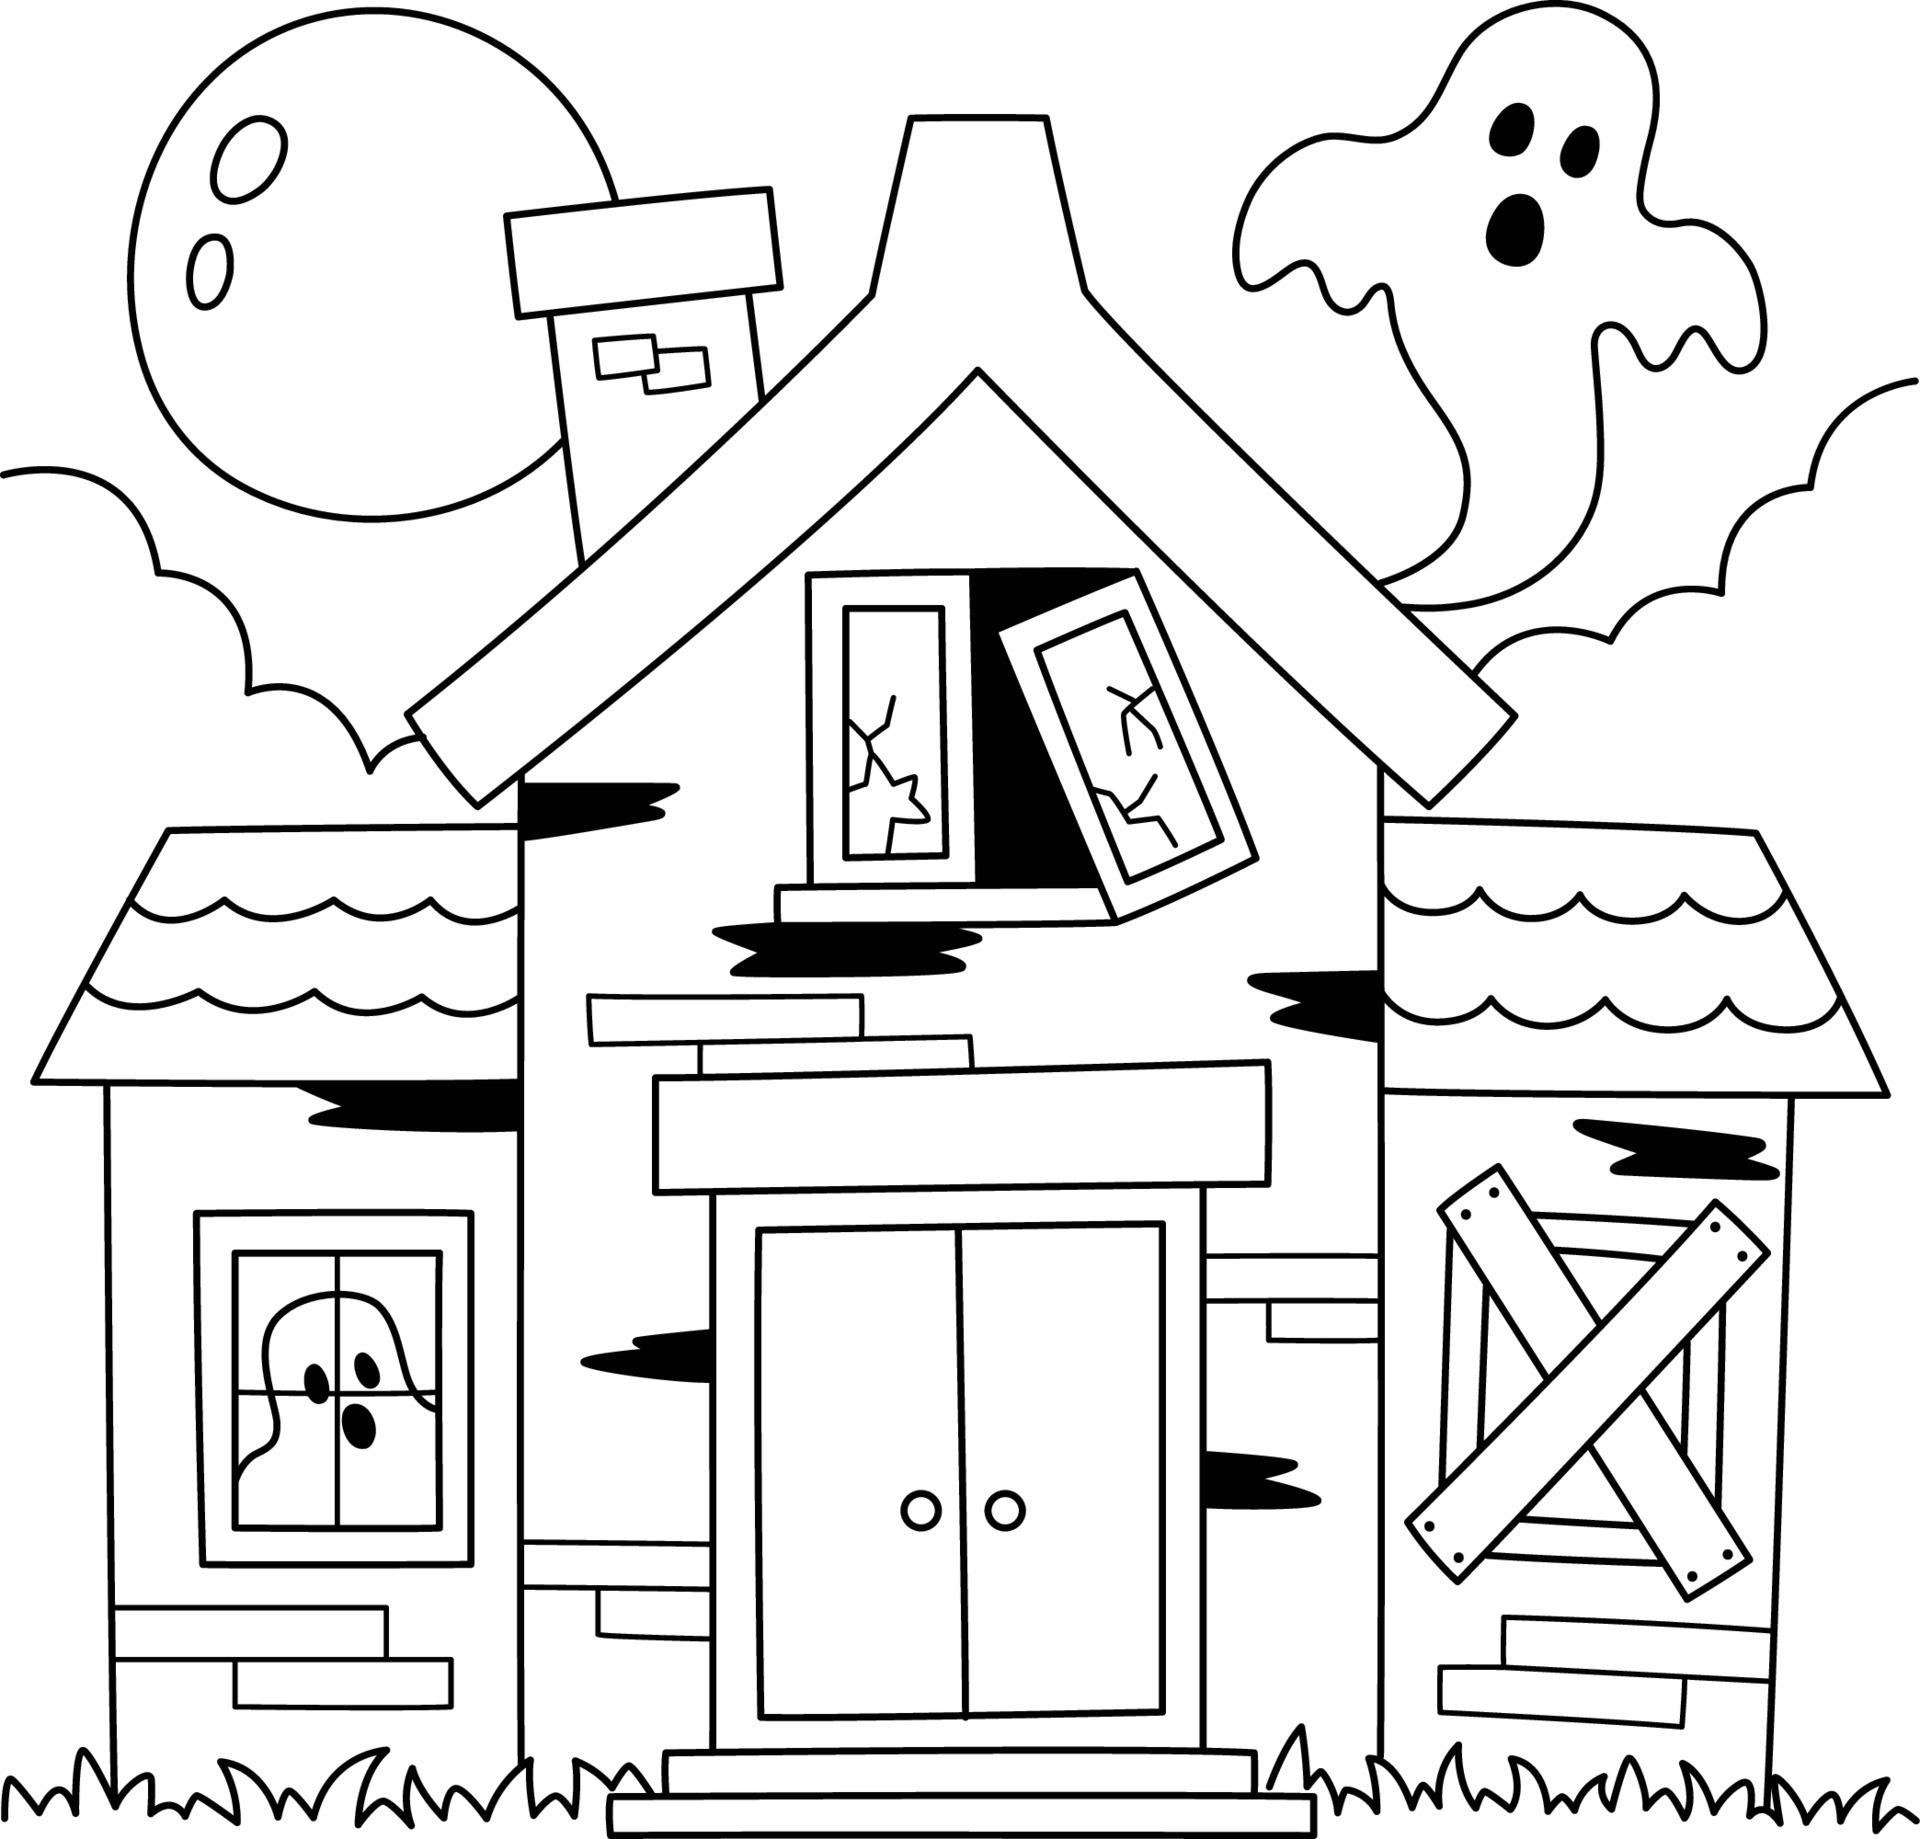 Desenho de Fantasma do dia das bruxas para colorir